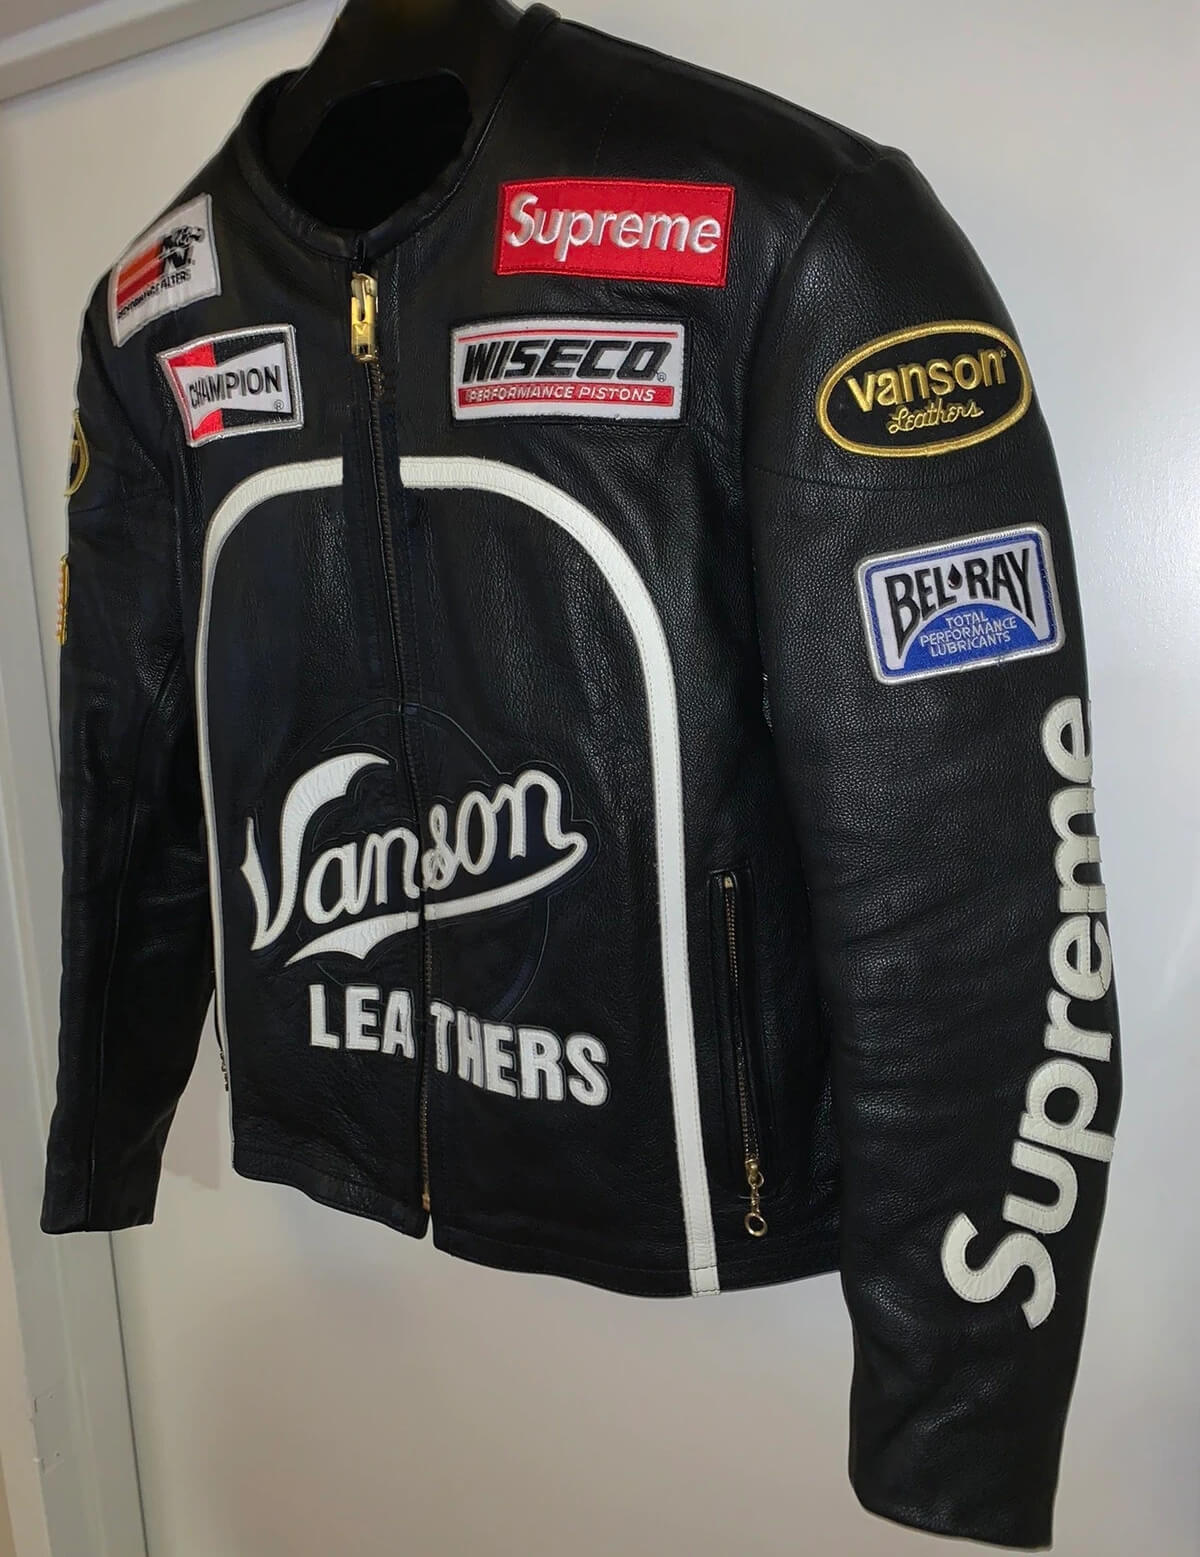 Black Supreme Vanson Leather Jacket - Maker of Jacket